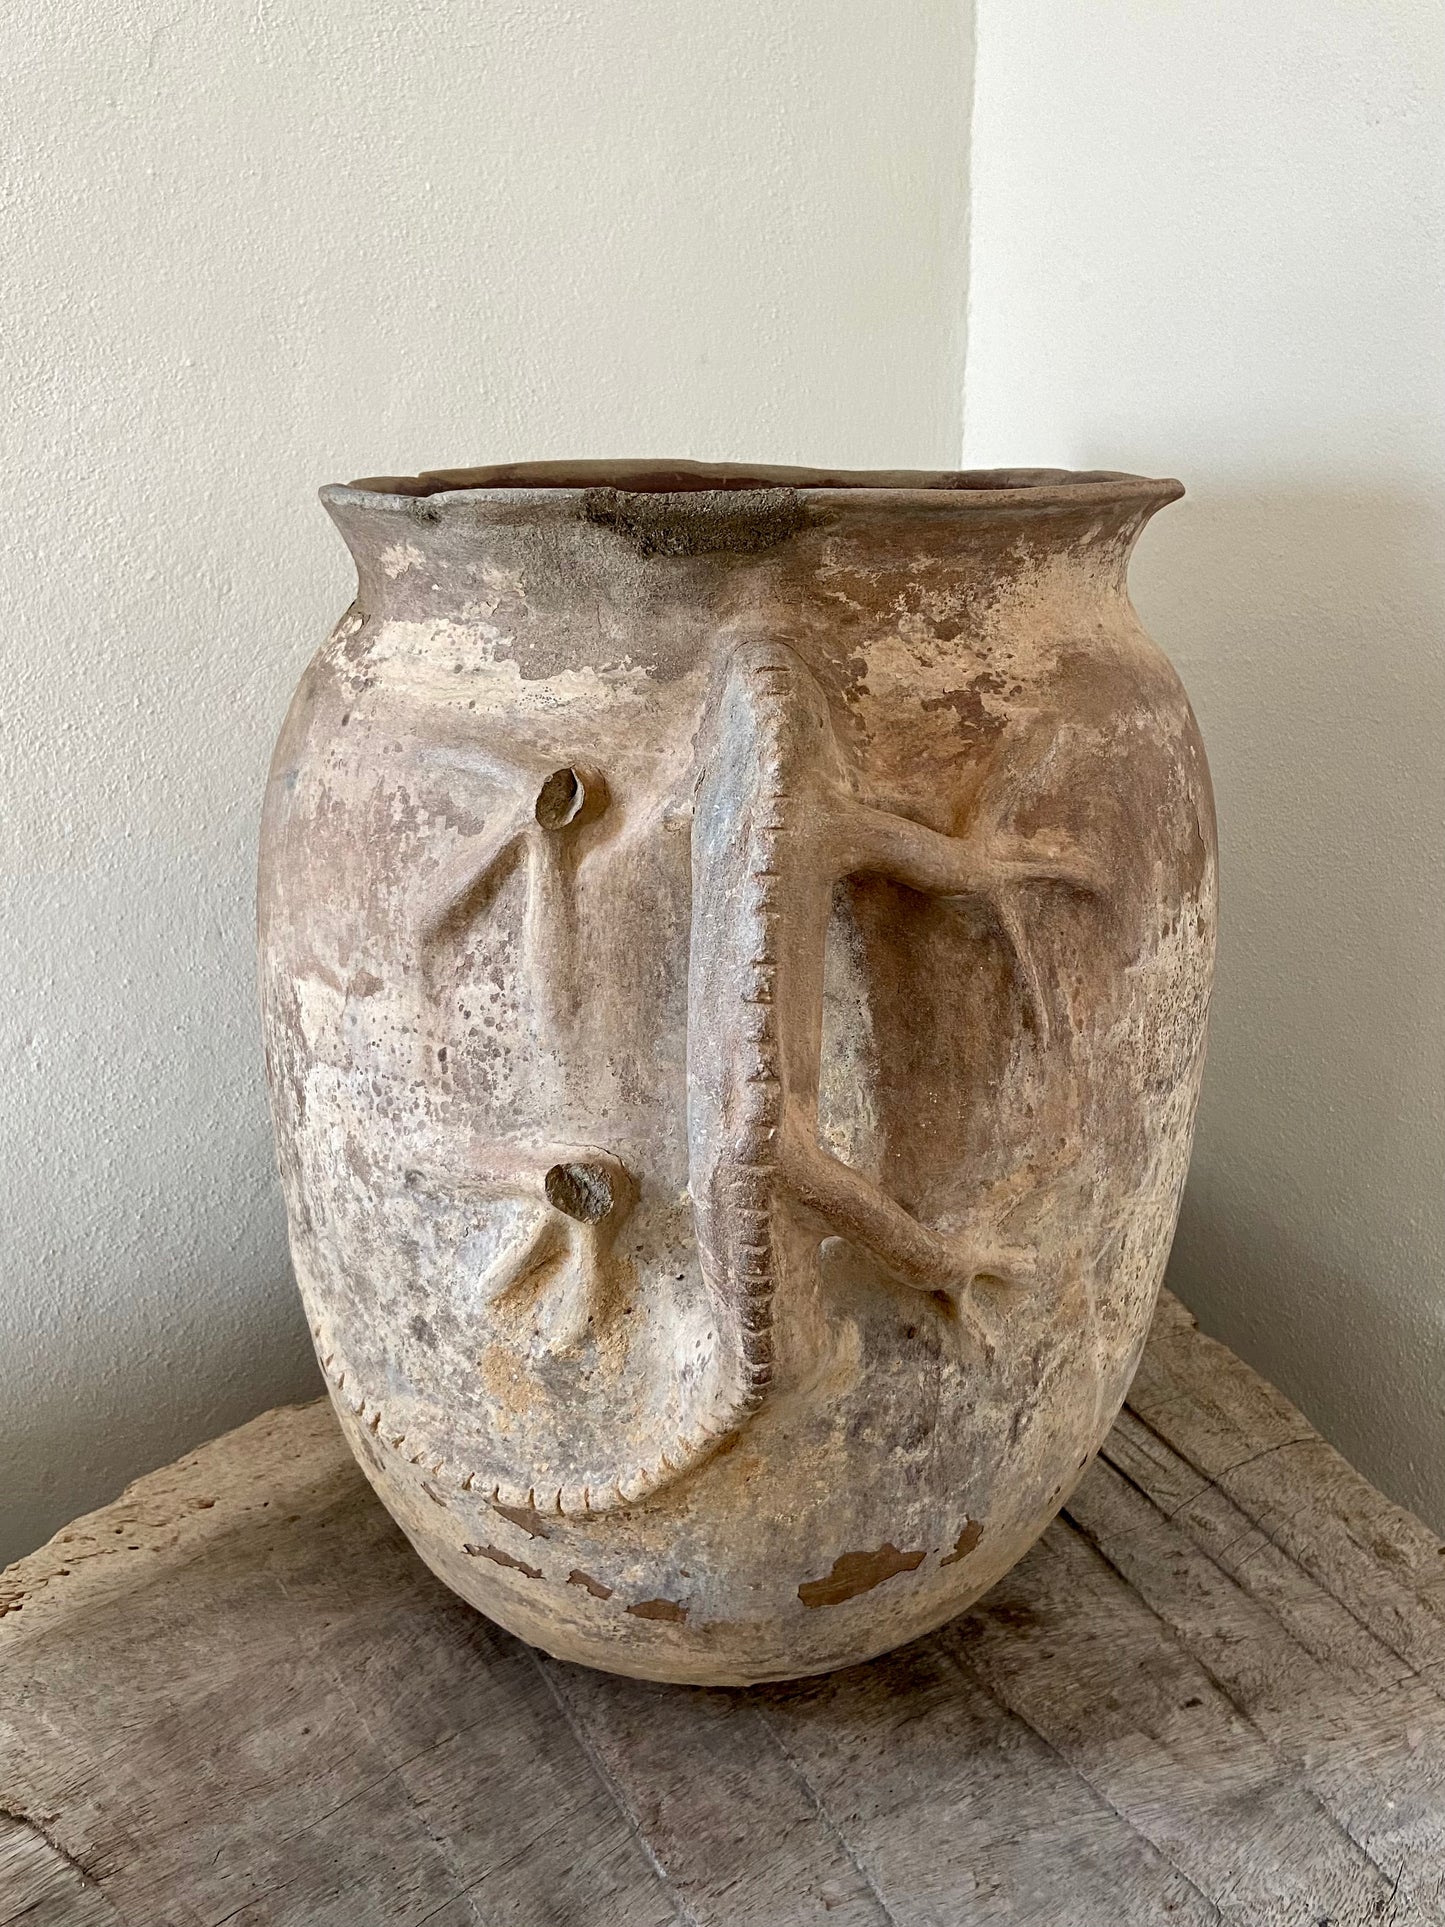 Pot With Iguana Handles From Puebla / Tinaja Poblana Con Asas de Iguana